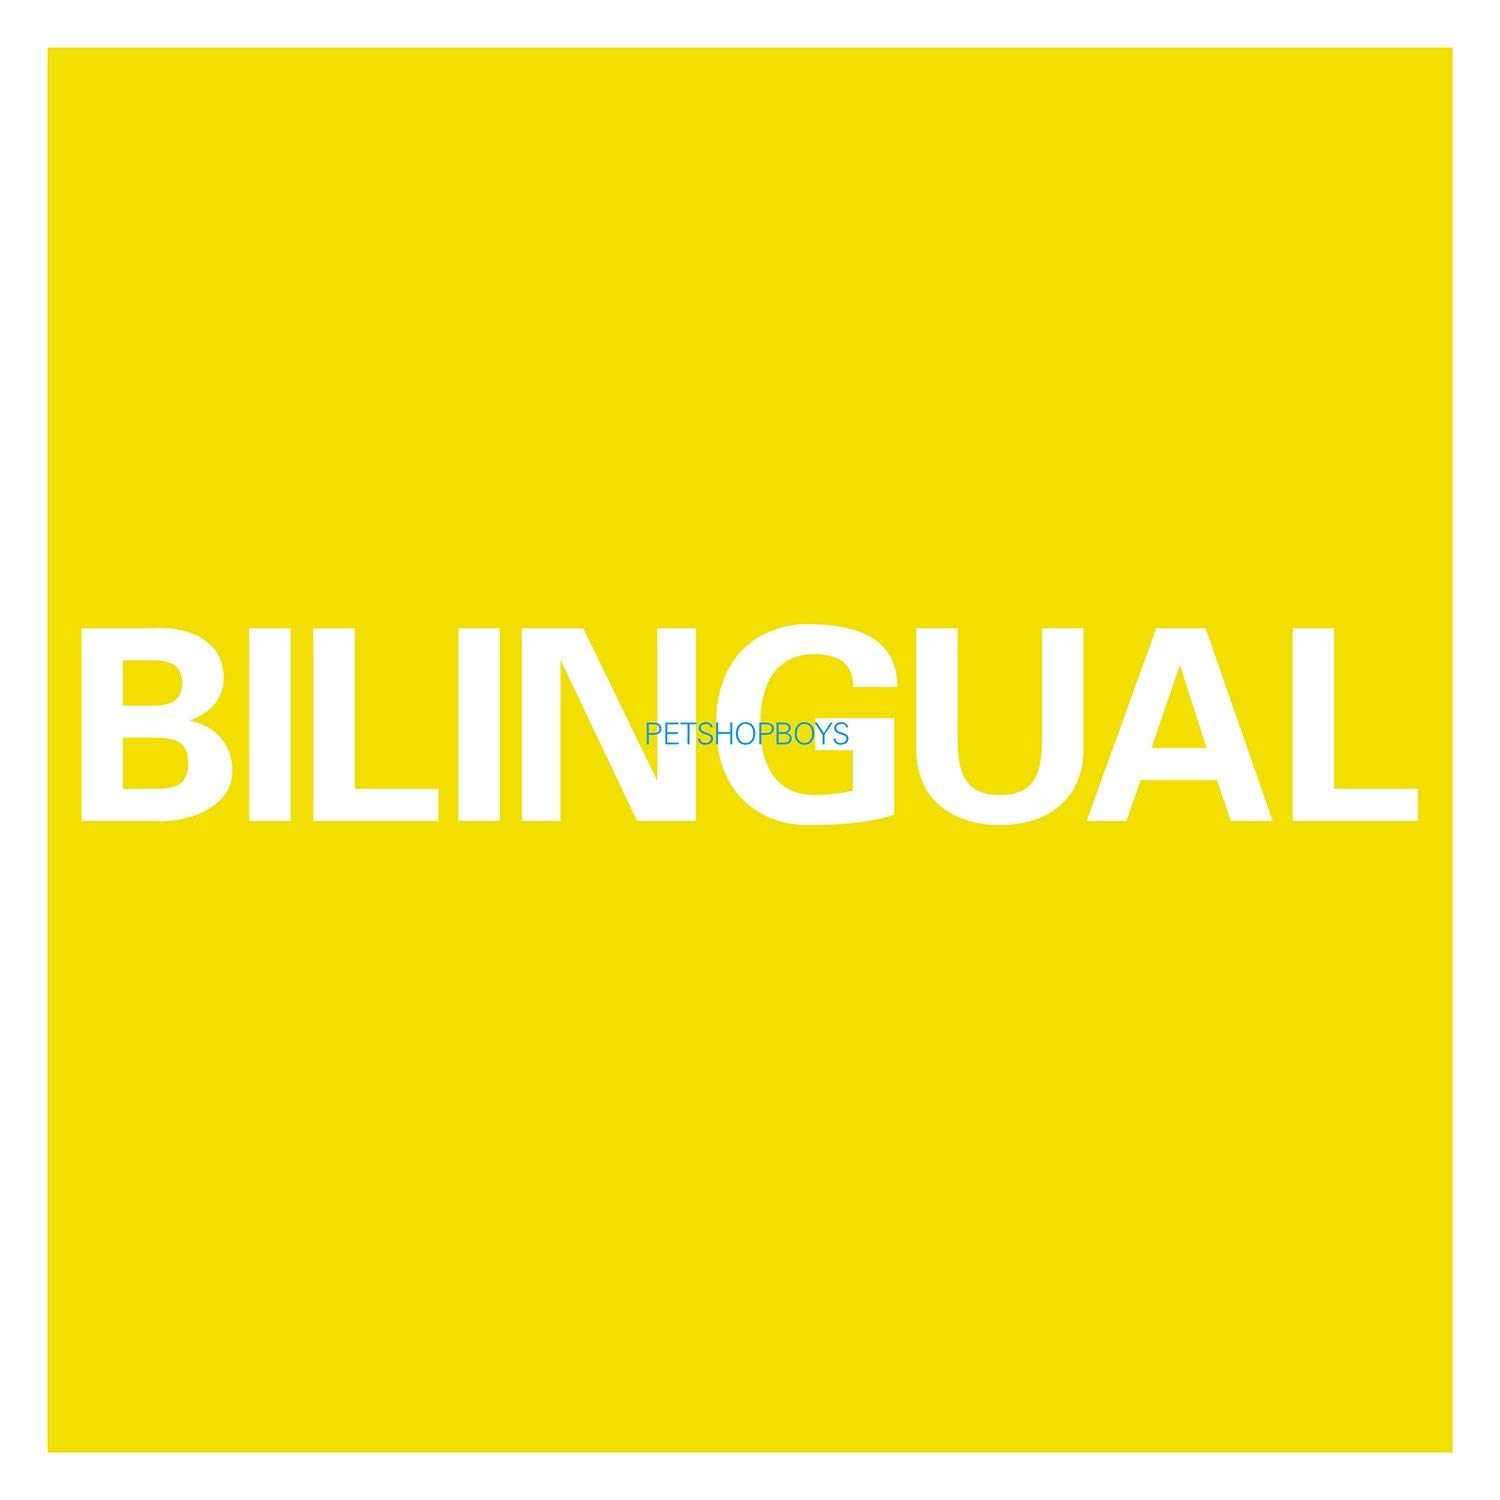 Bilingual - Vinyl | Pet Shop Boys